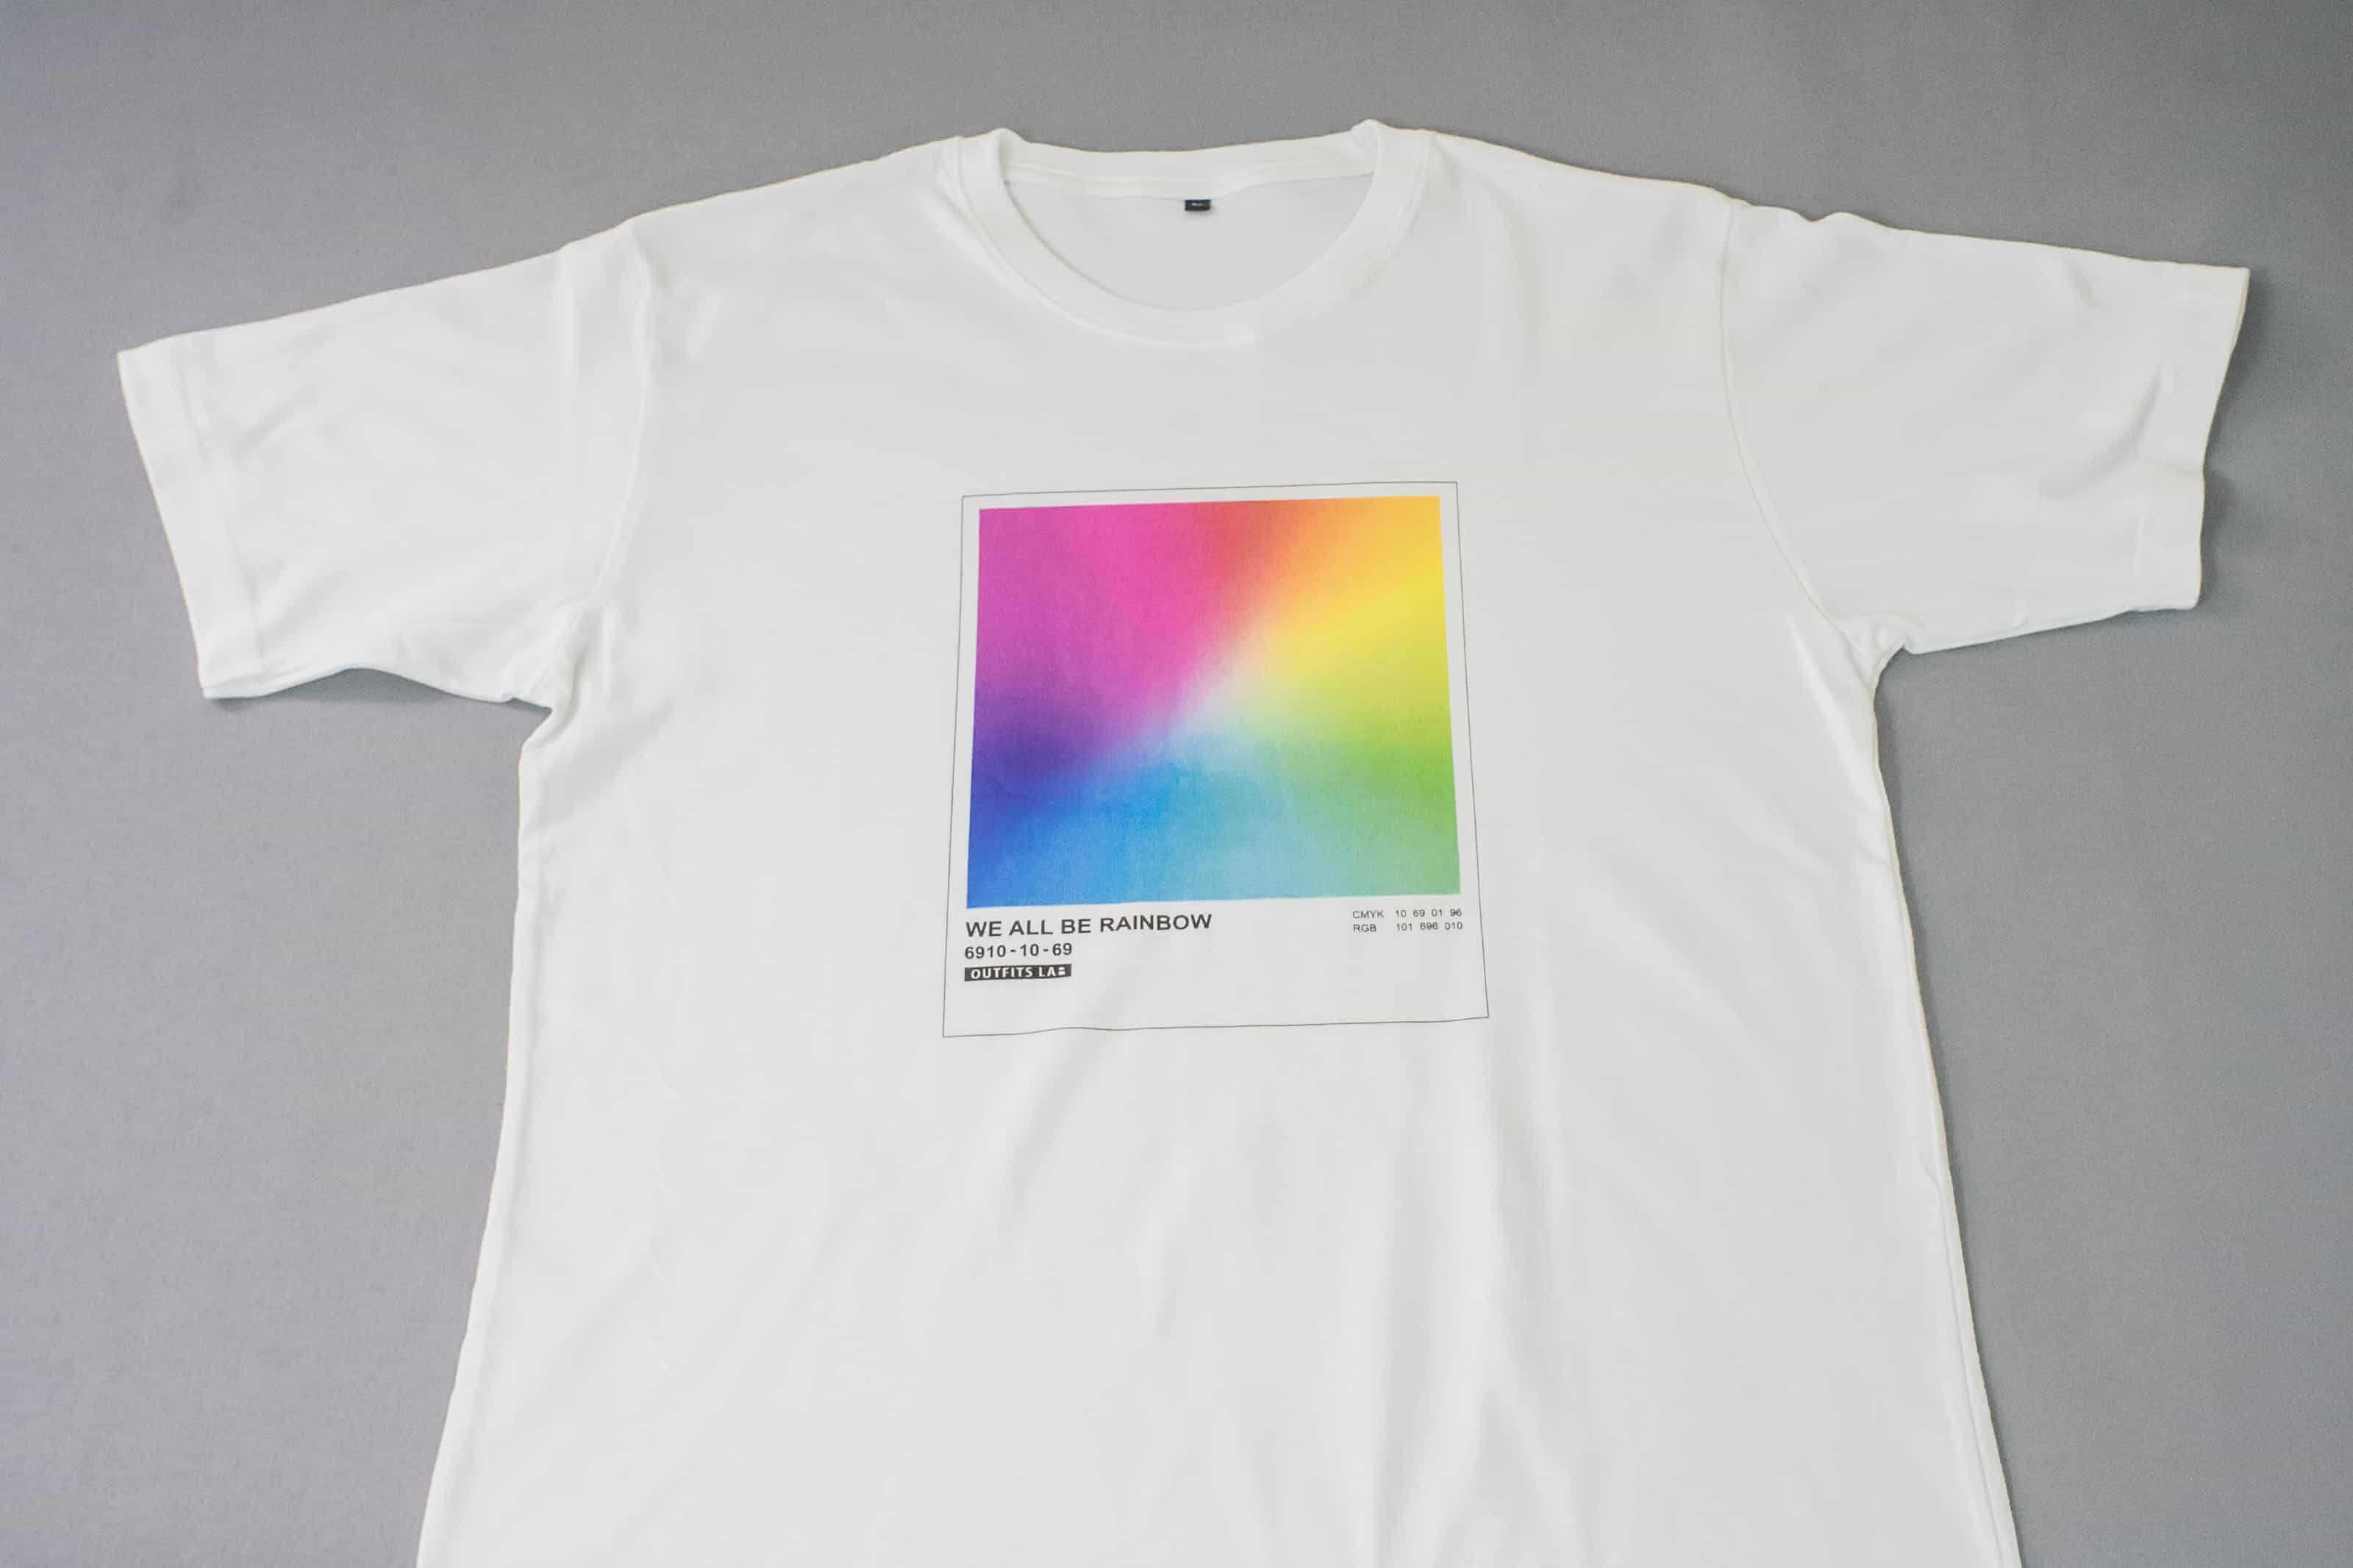 客製化T恤-RAINBOW  T恤的第1張圖(客製化公司制服、班服製作、團體服製作等示意或作品圖)